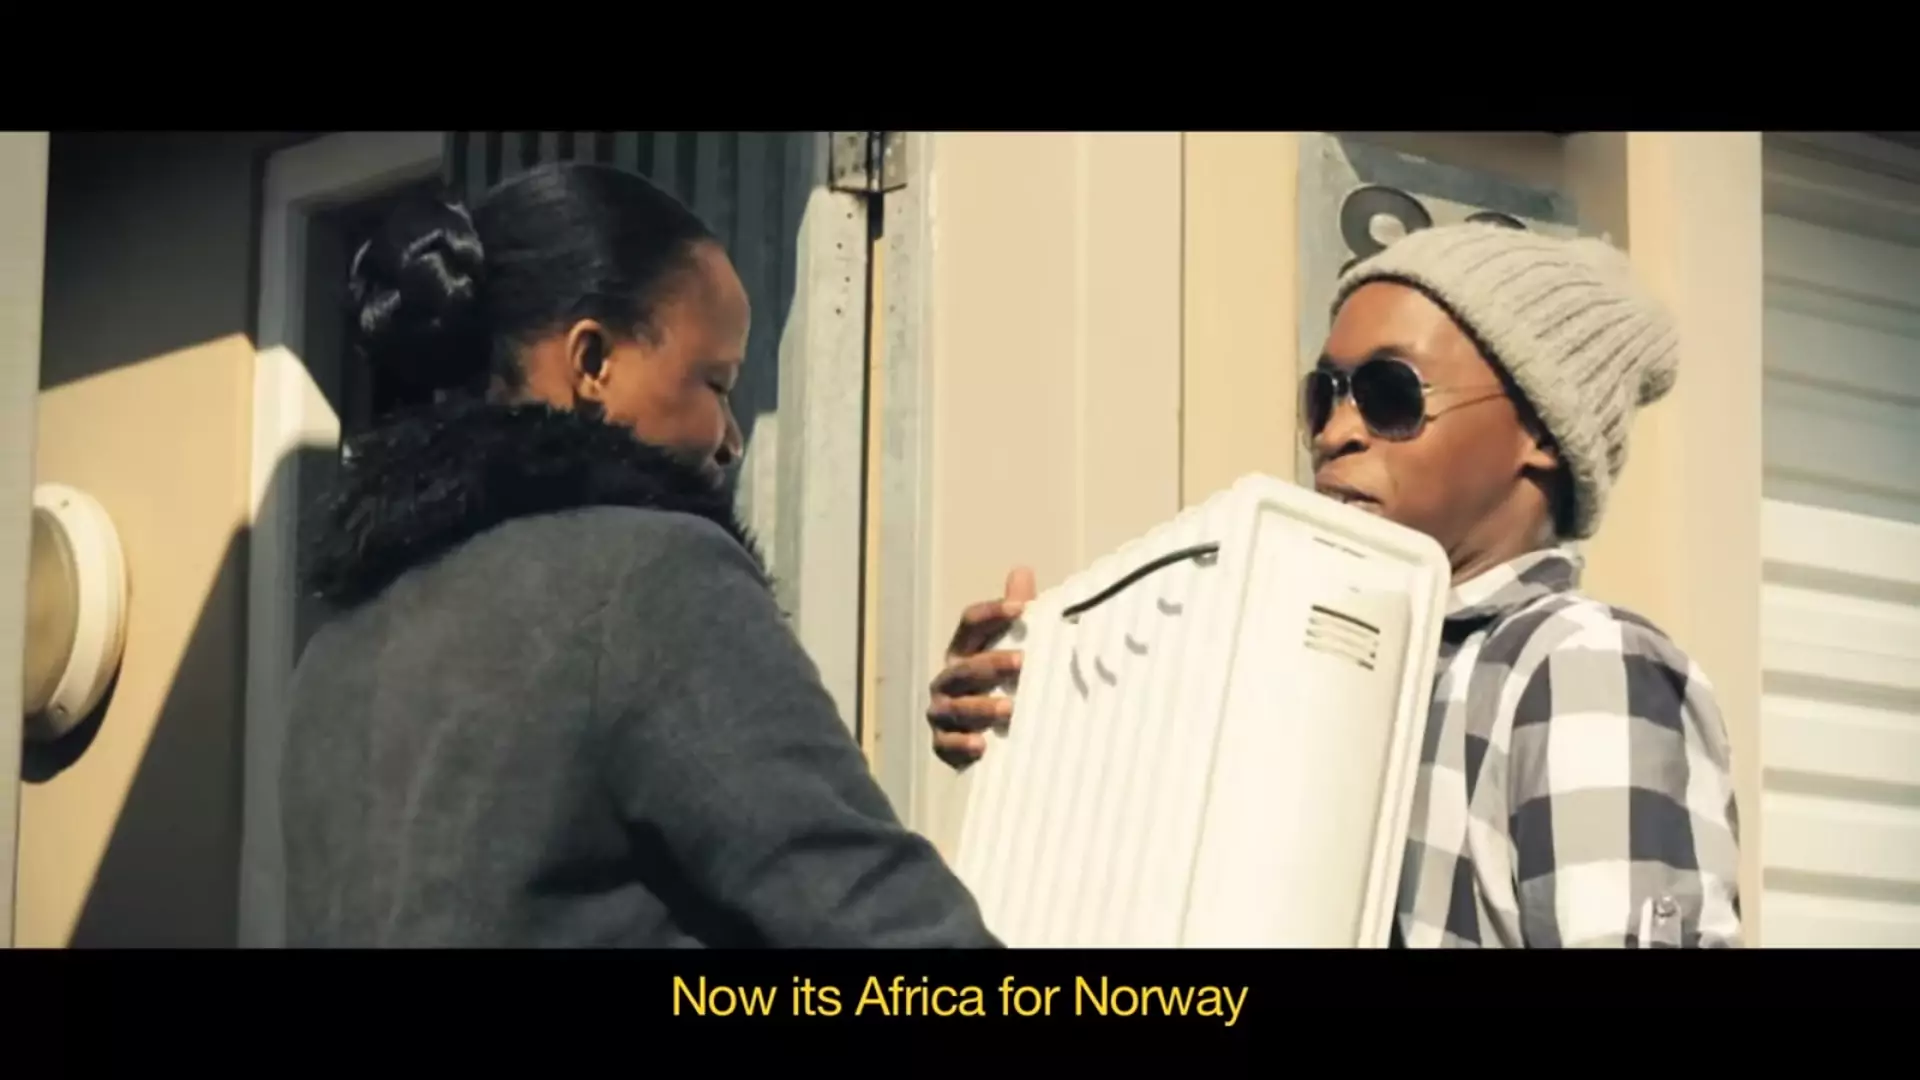 Role się odwróciły. Teraz to Afryka chce uratować Norwegię, wysyłając im... kaloryfery